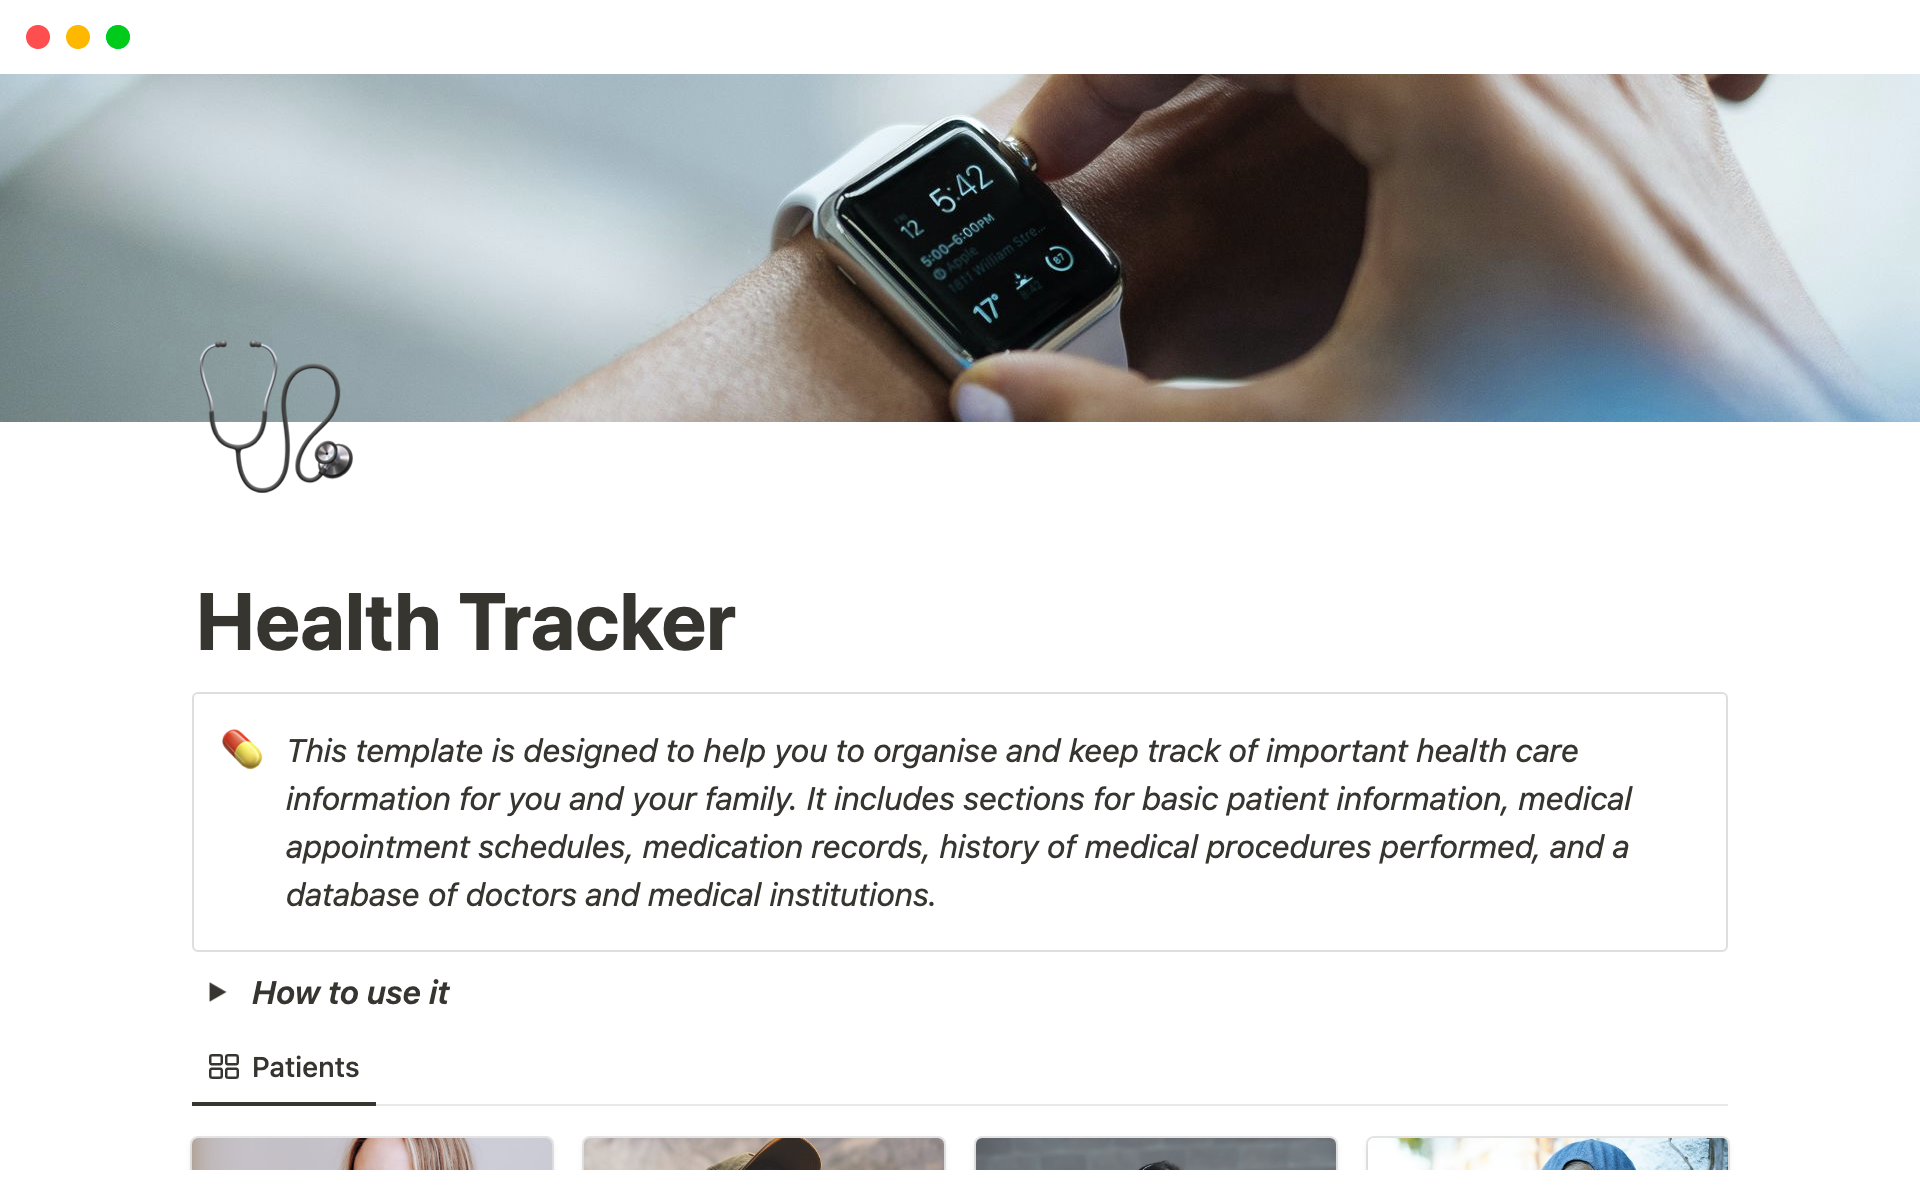 Vista previa de una plantilla para Health Tracker